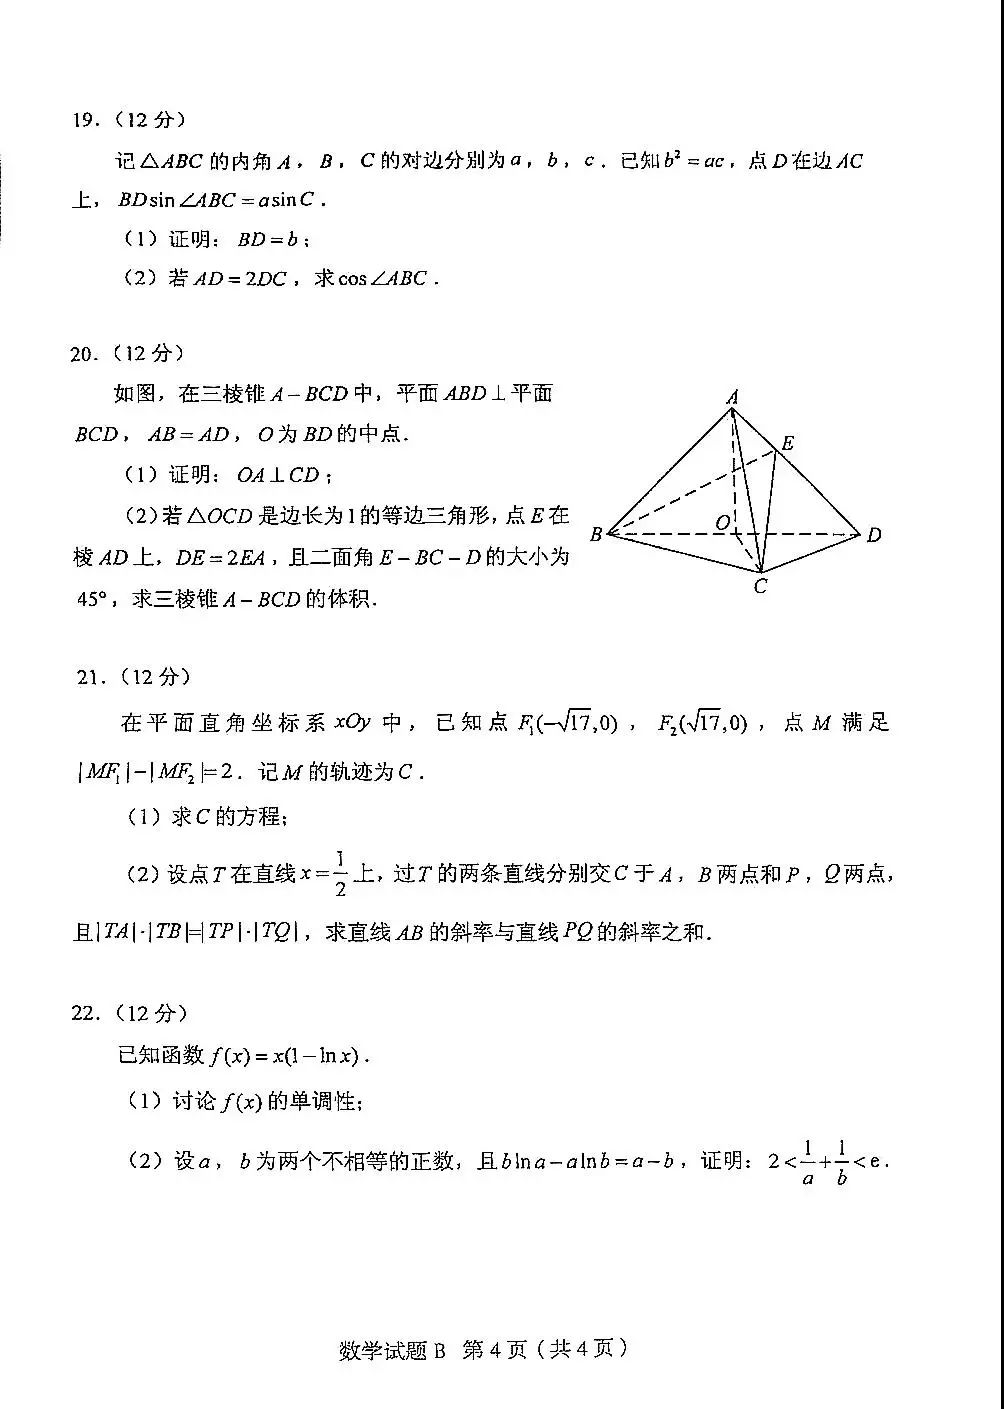 2022年新高考一卷数学真题及答案-会知网www.ihzw.com.cn